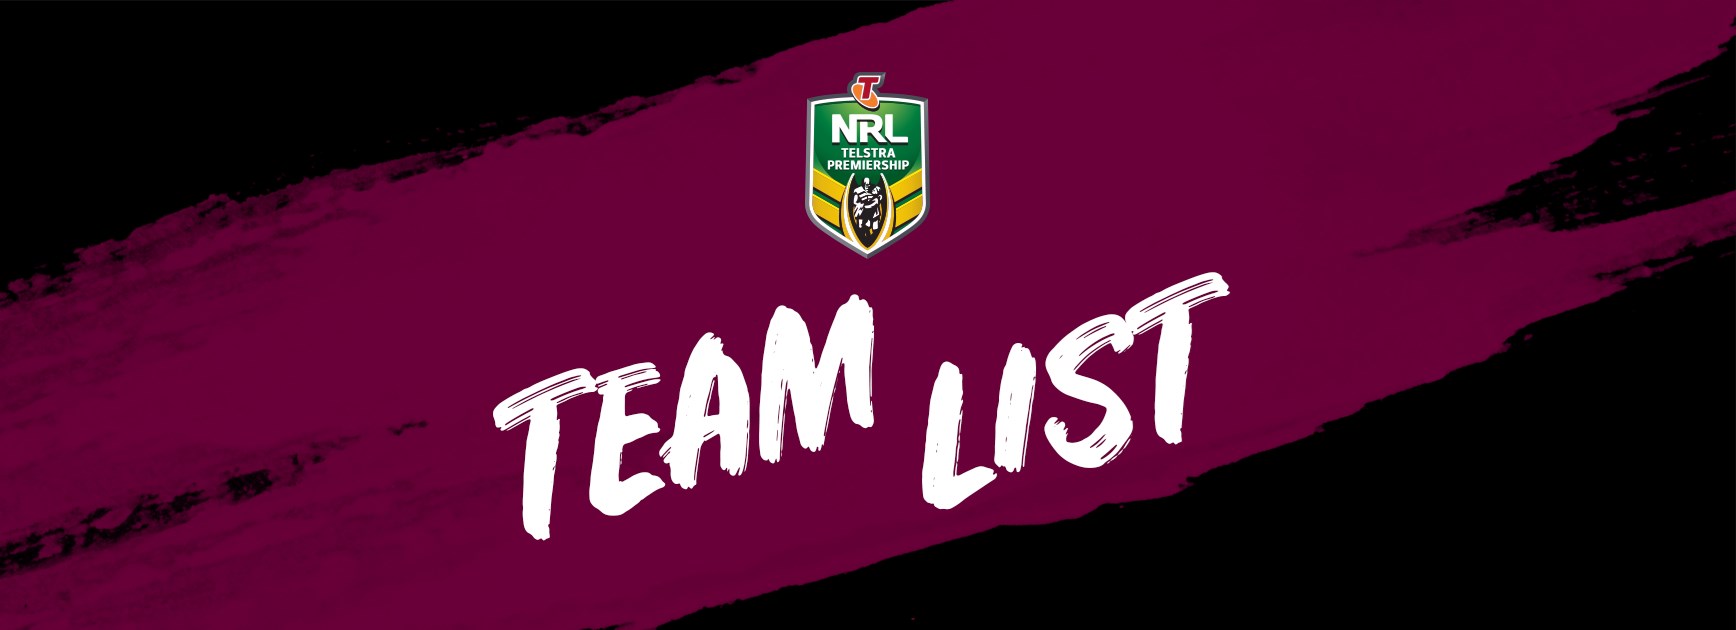 NRL Team List - Round 7